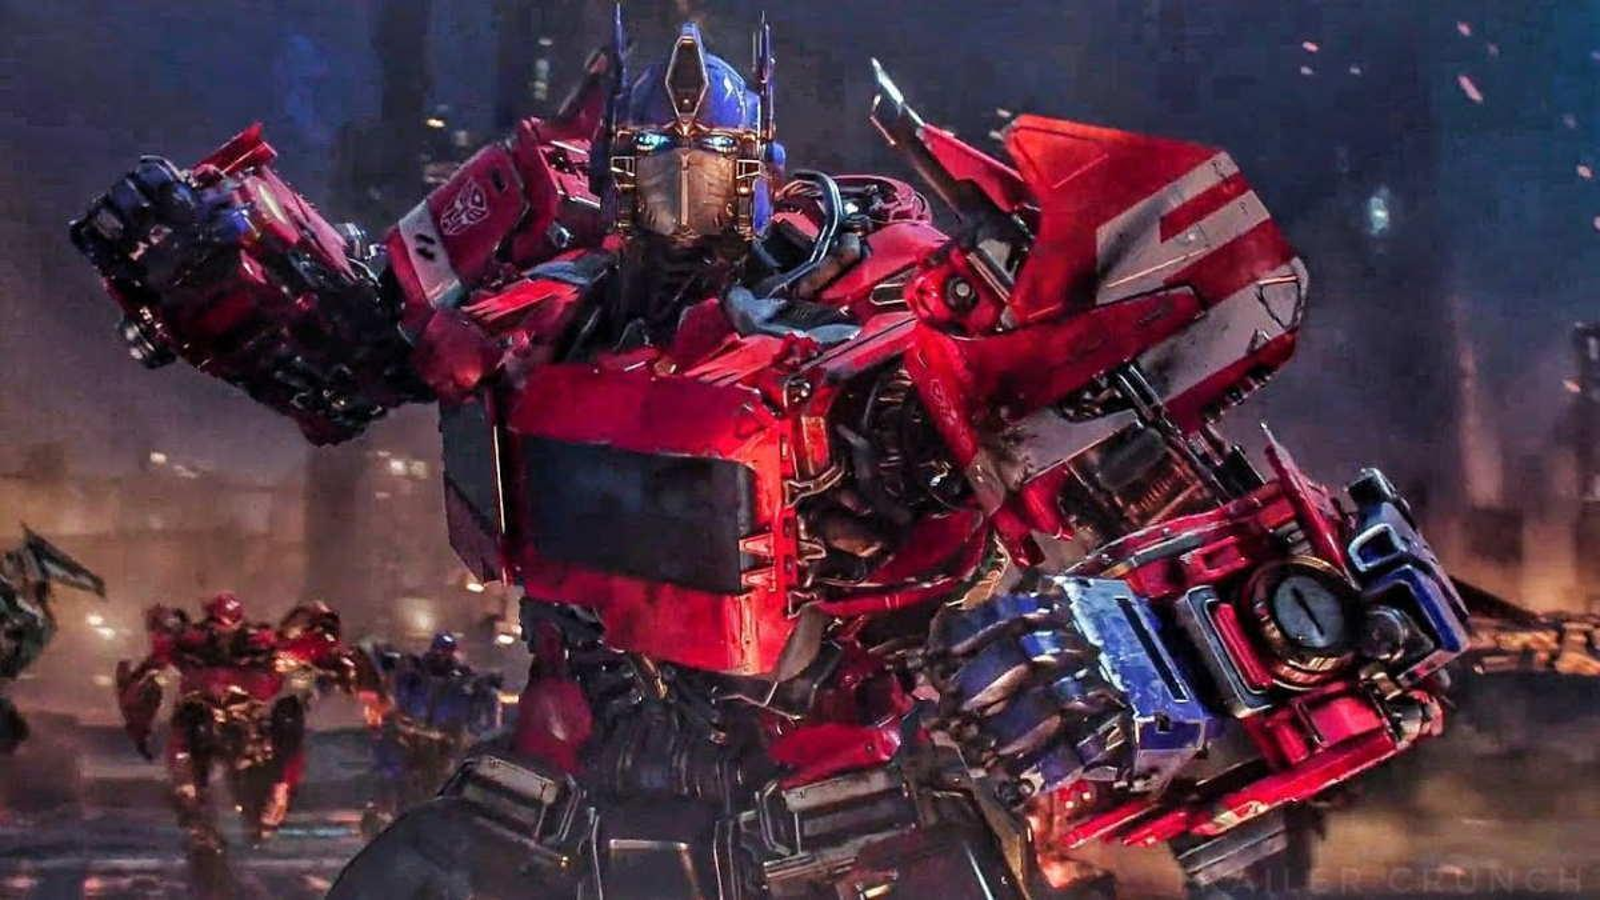 Filme Coleção Trilogia Transformers 3 em 1